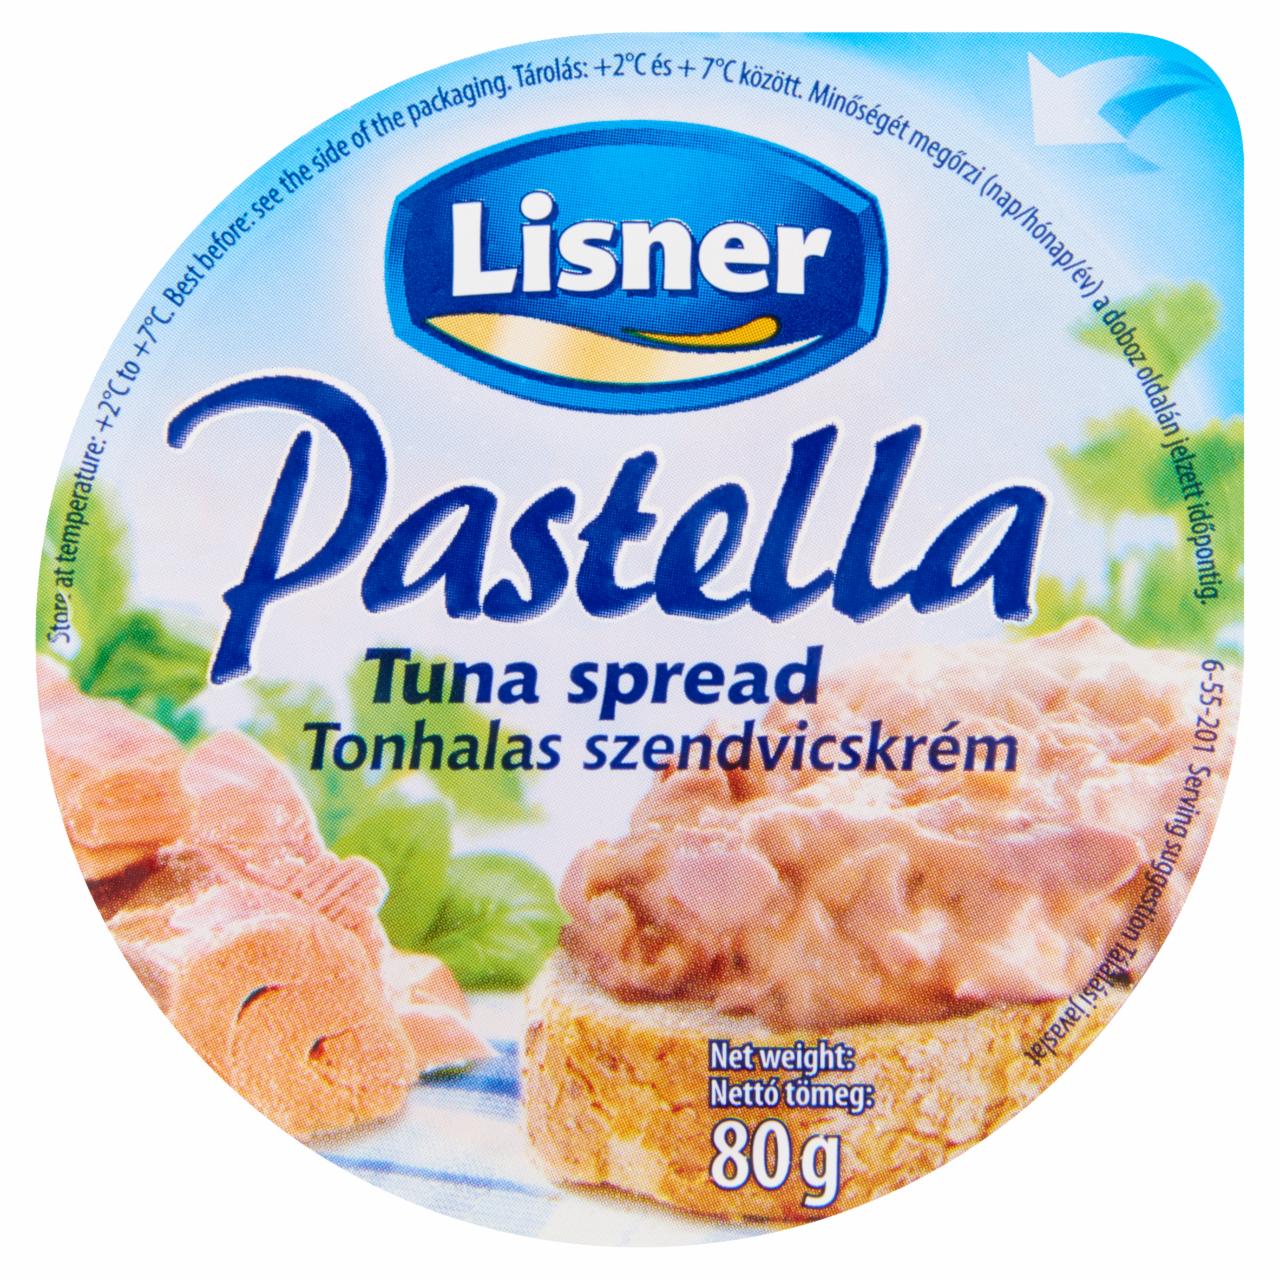 Képek - Lisner Pastella tonhalas szendvicskrém 80 g